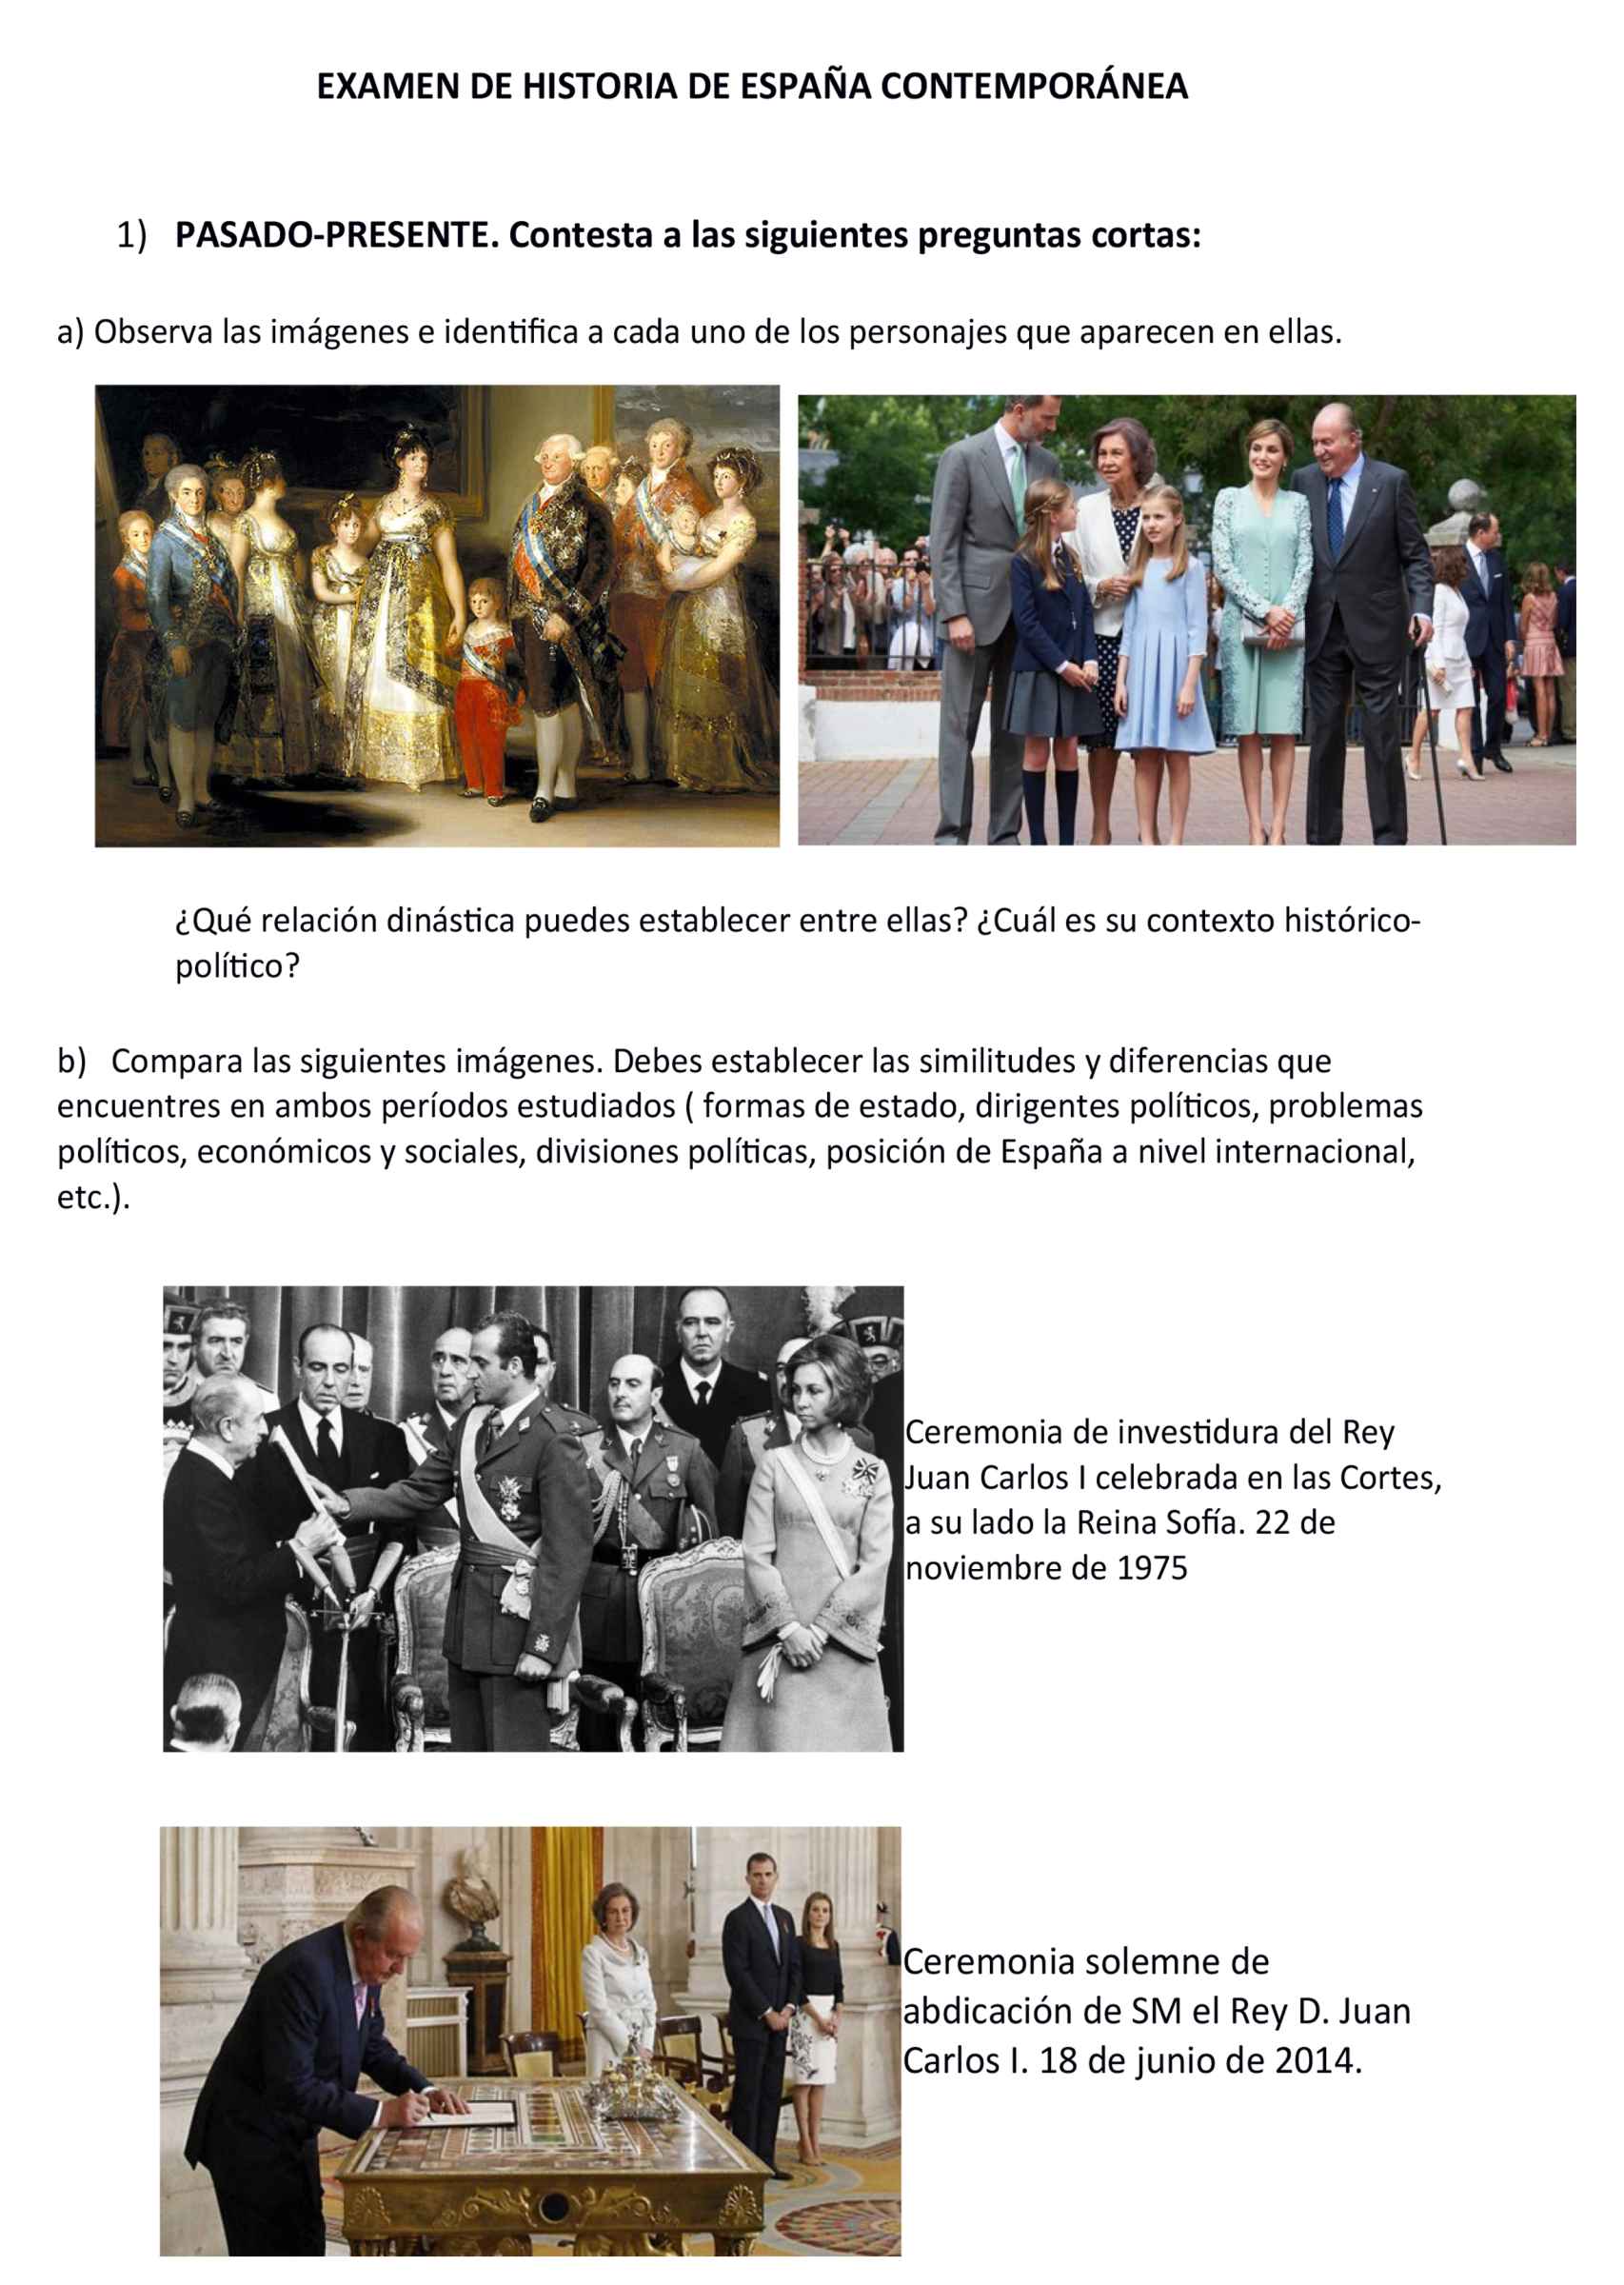 La primera parte del examen: compara las imágenes de las dos familias Borbón.